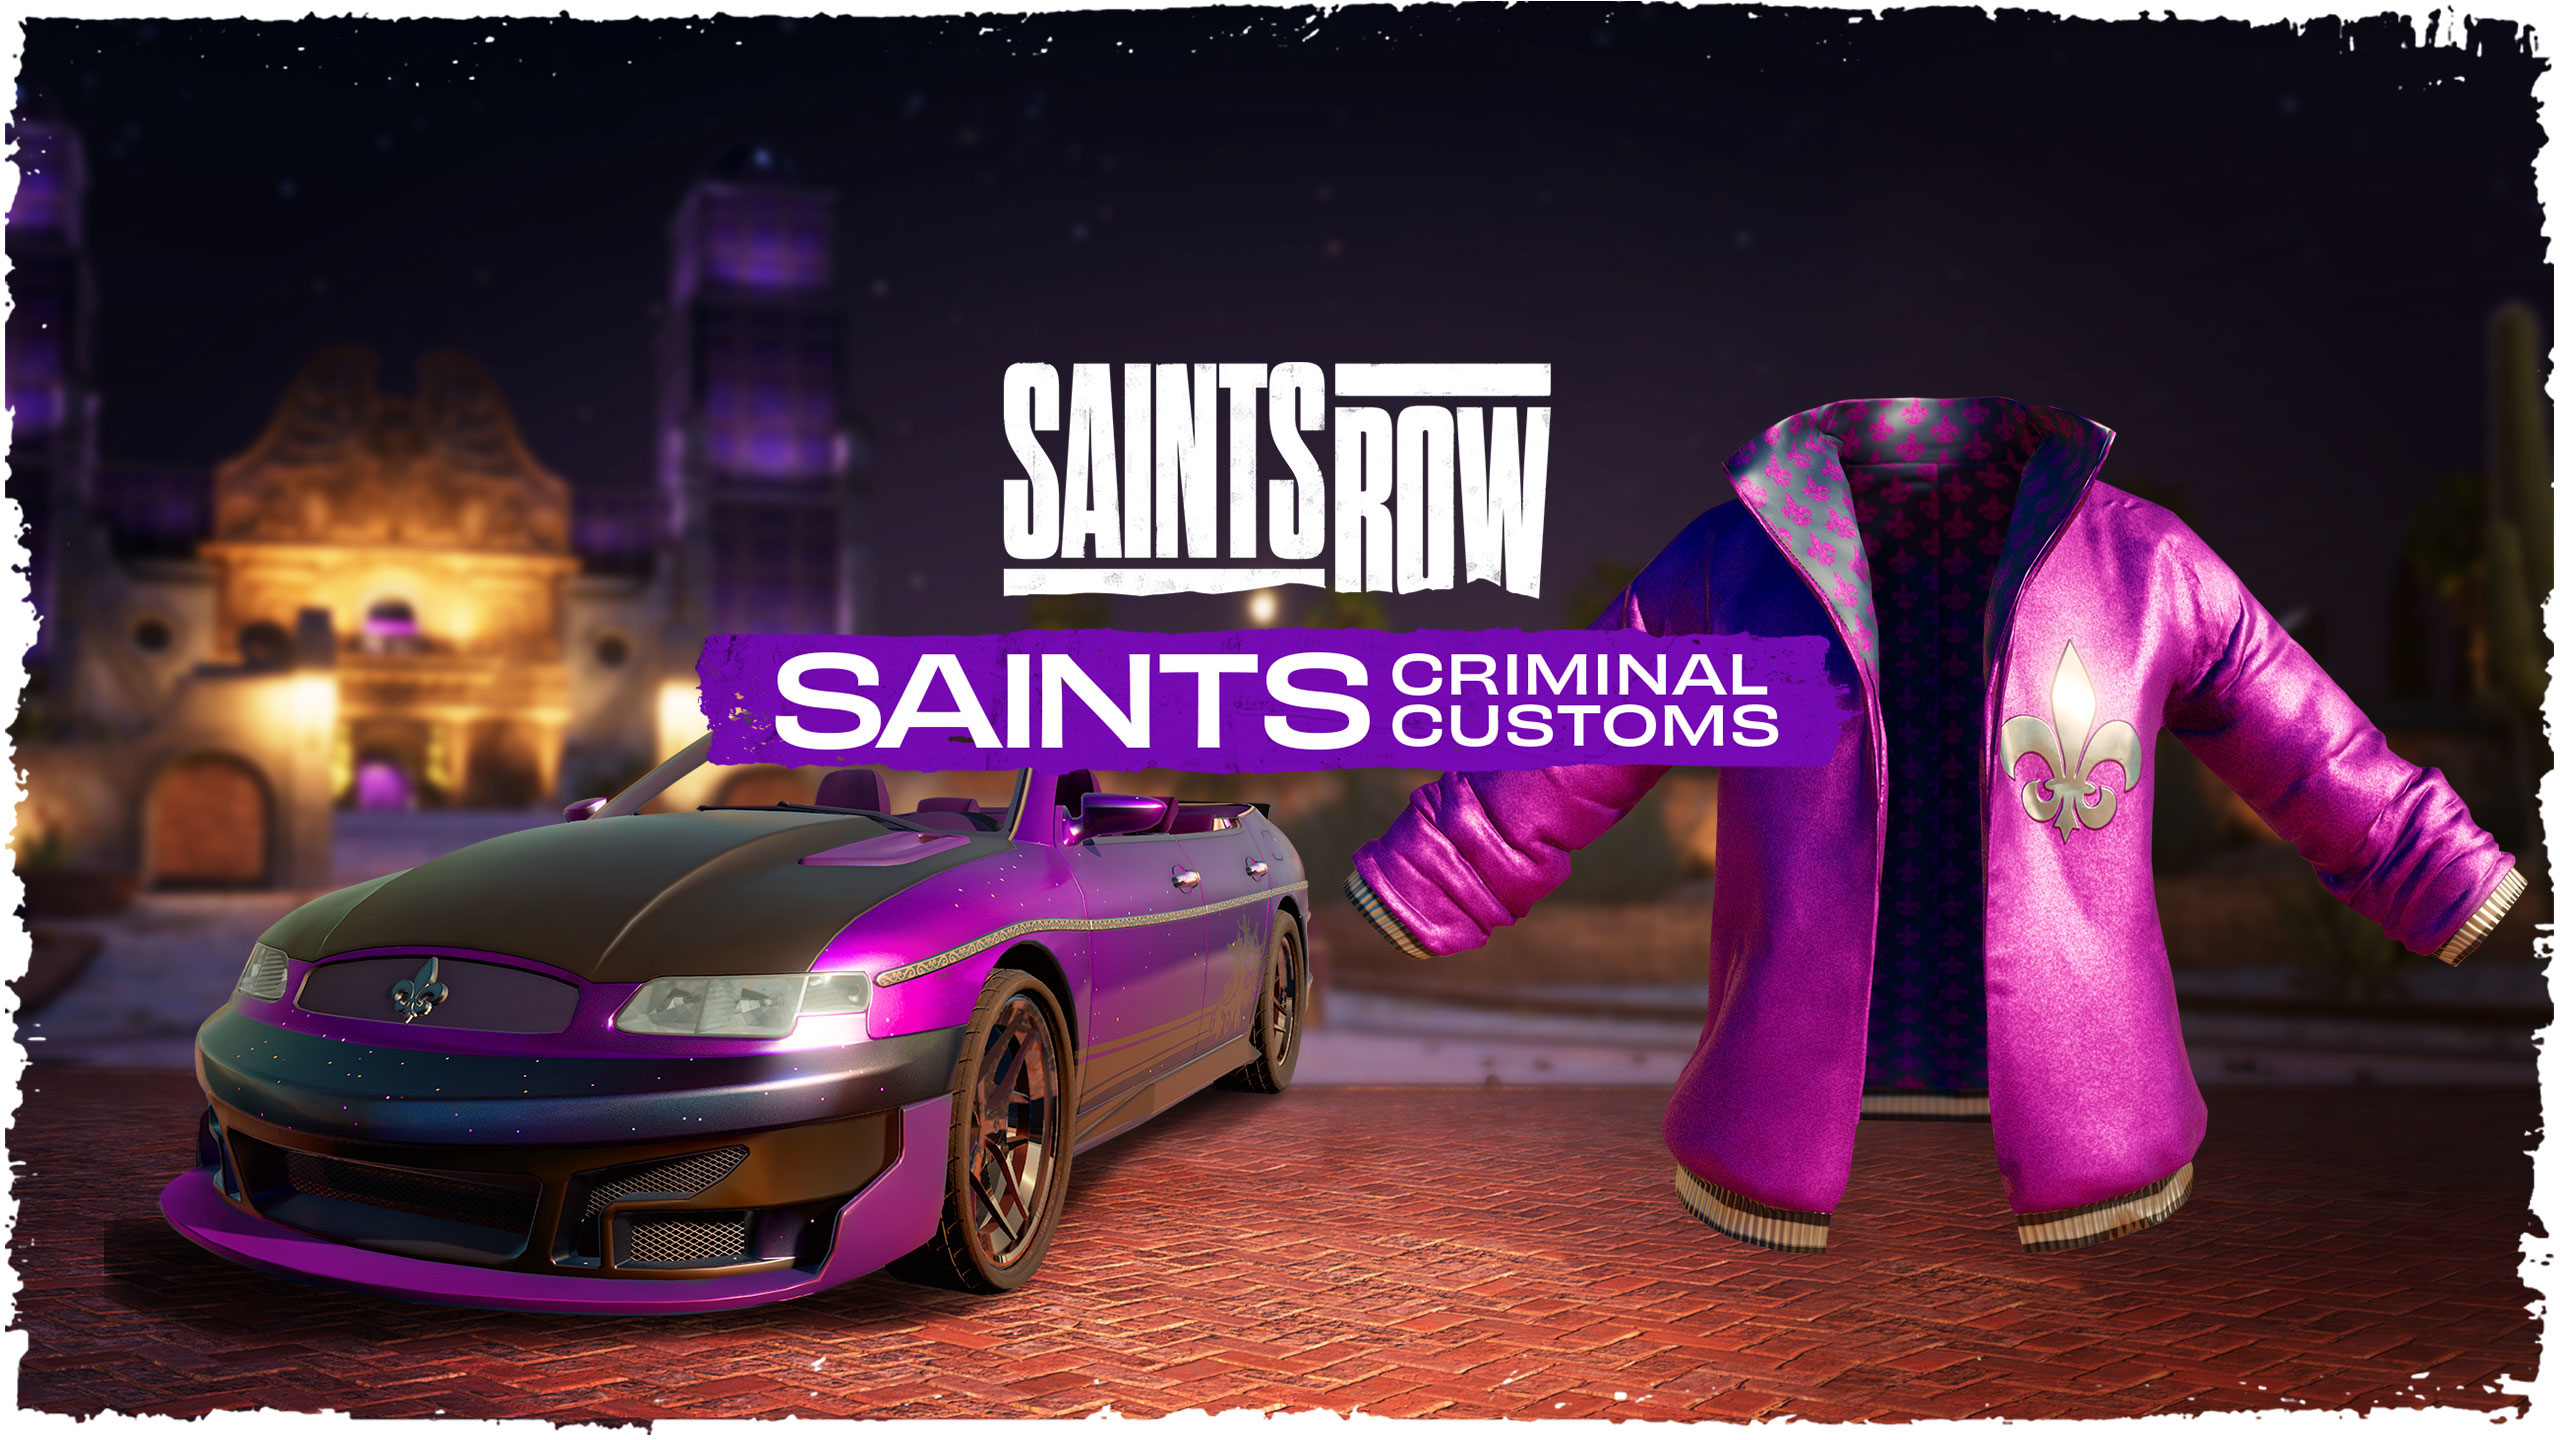 Saints Row Saints Criminal Customs Edition Epic Games CD Key 68.2 $